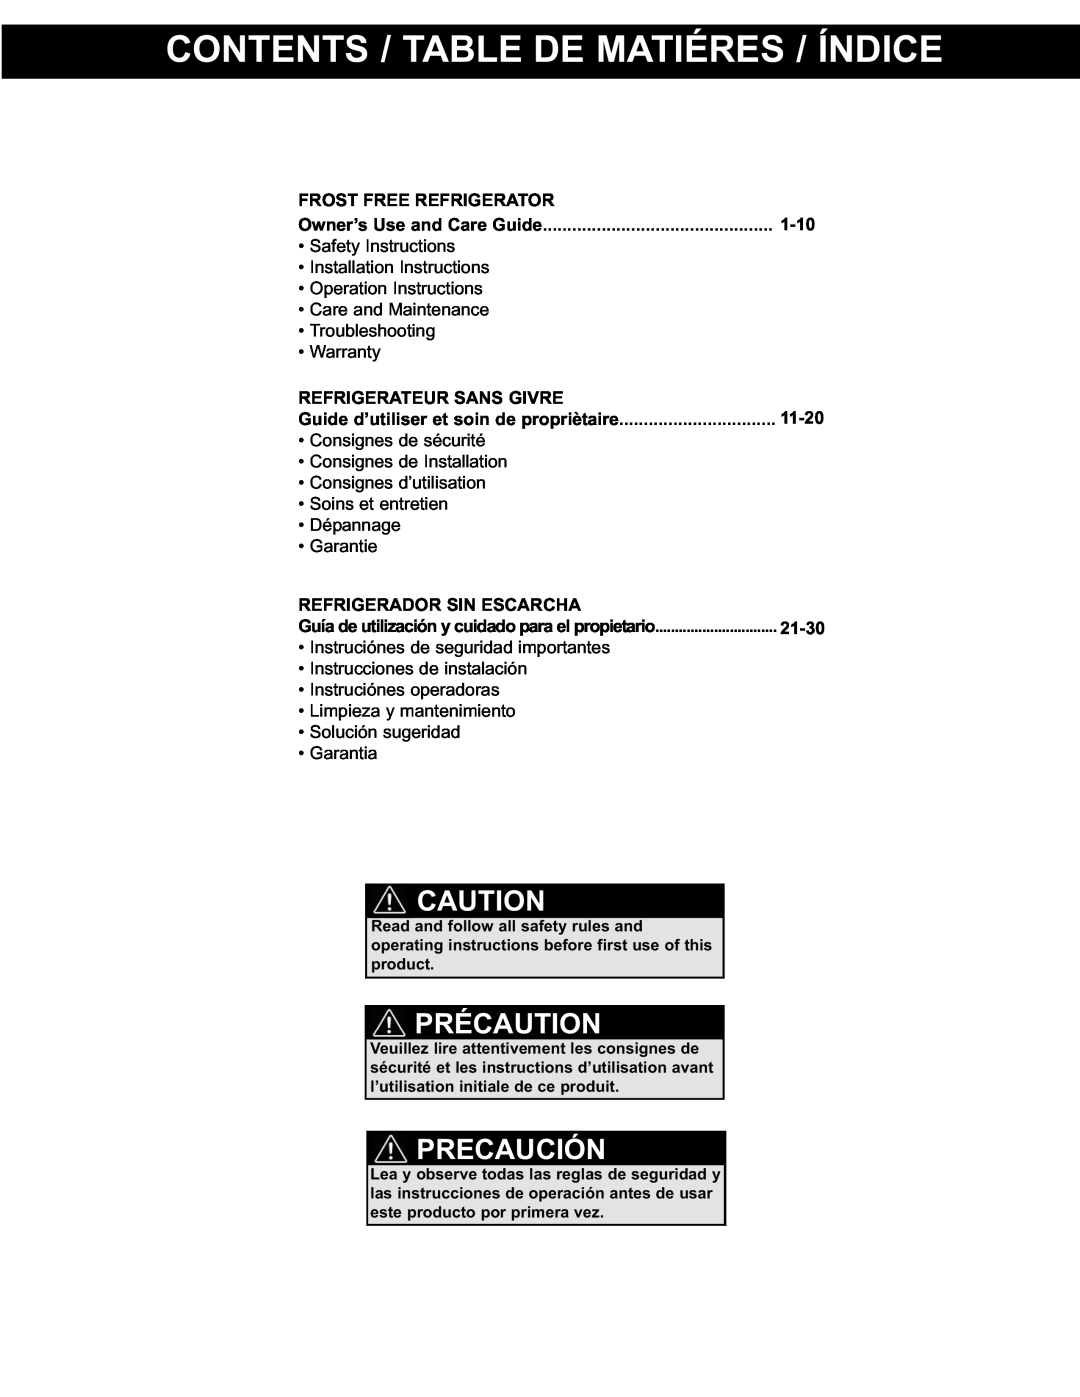 Danby DPF074B1WDB manual Contents / Table De Matiéres / Índice, Précaution, Precaución 